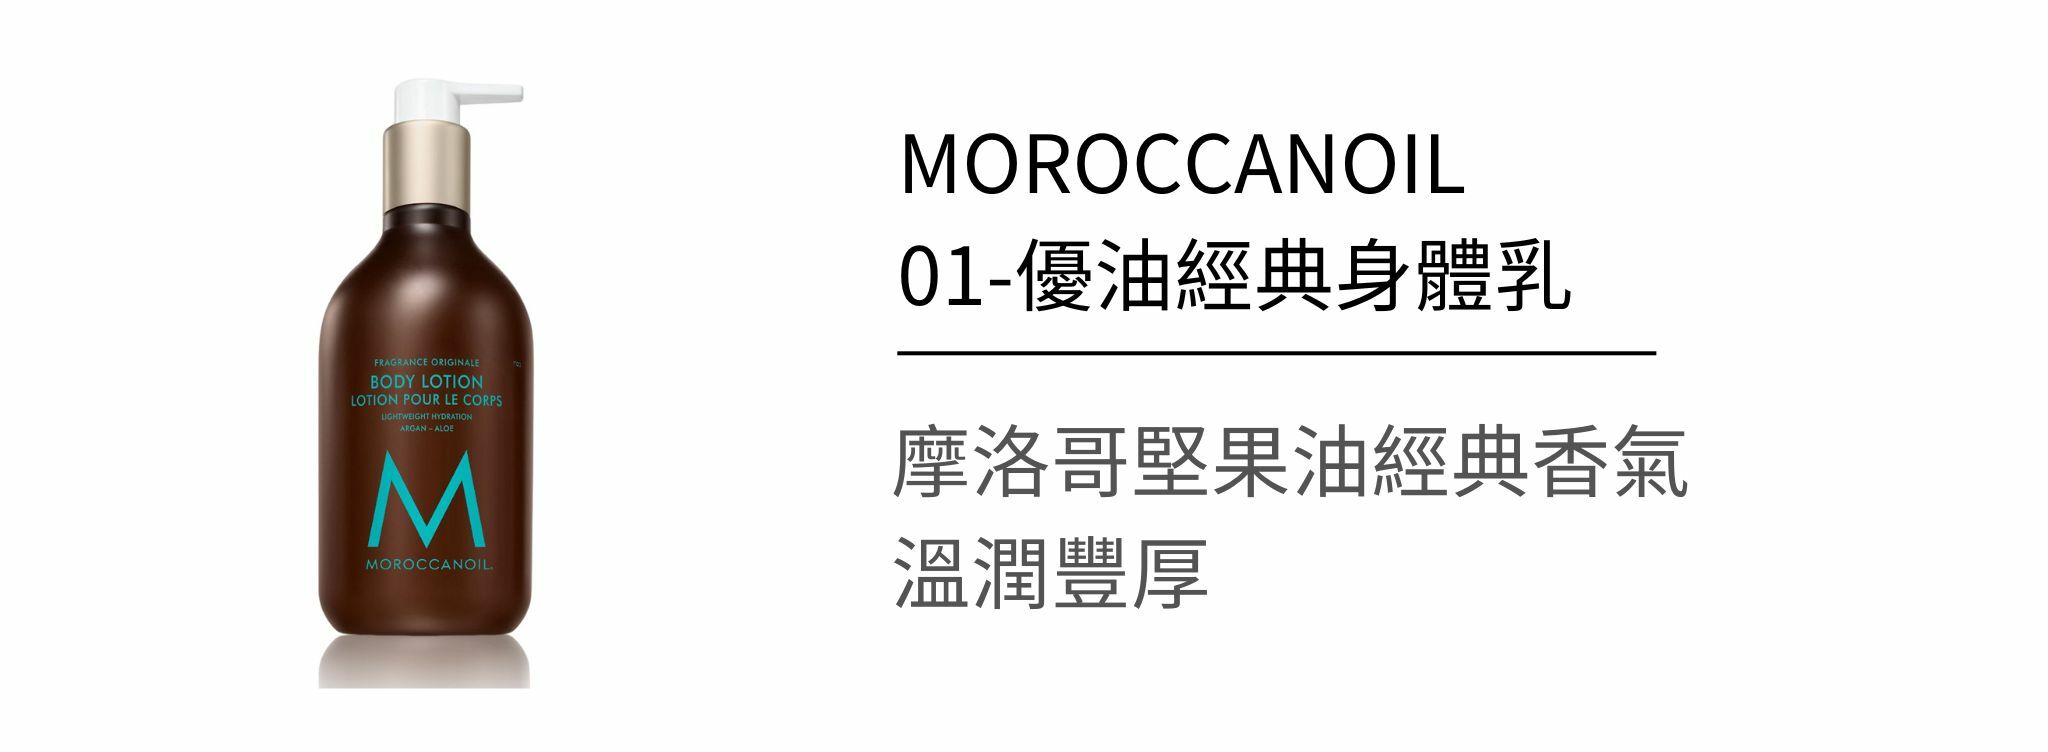 摩洛哥優油如何挑選？網紅推薦的原因究竟是..摩洛哥髮品詳細介紹